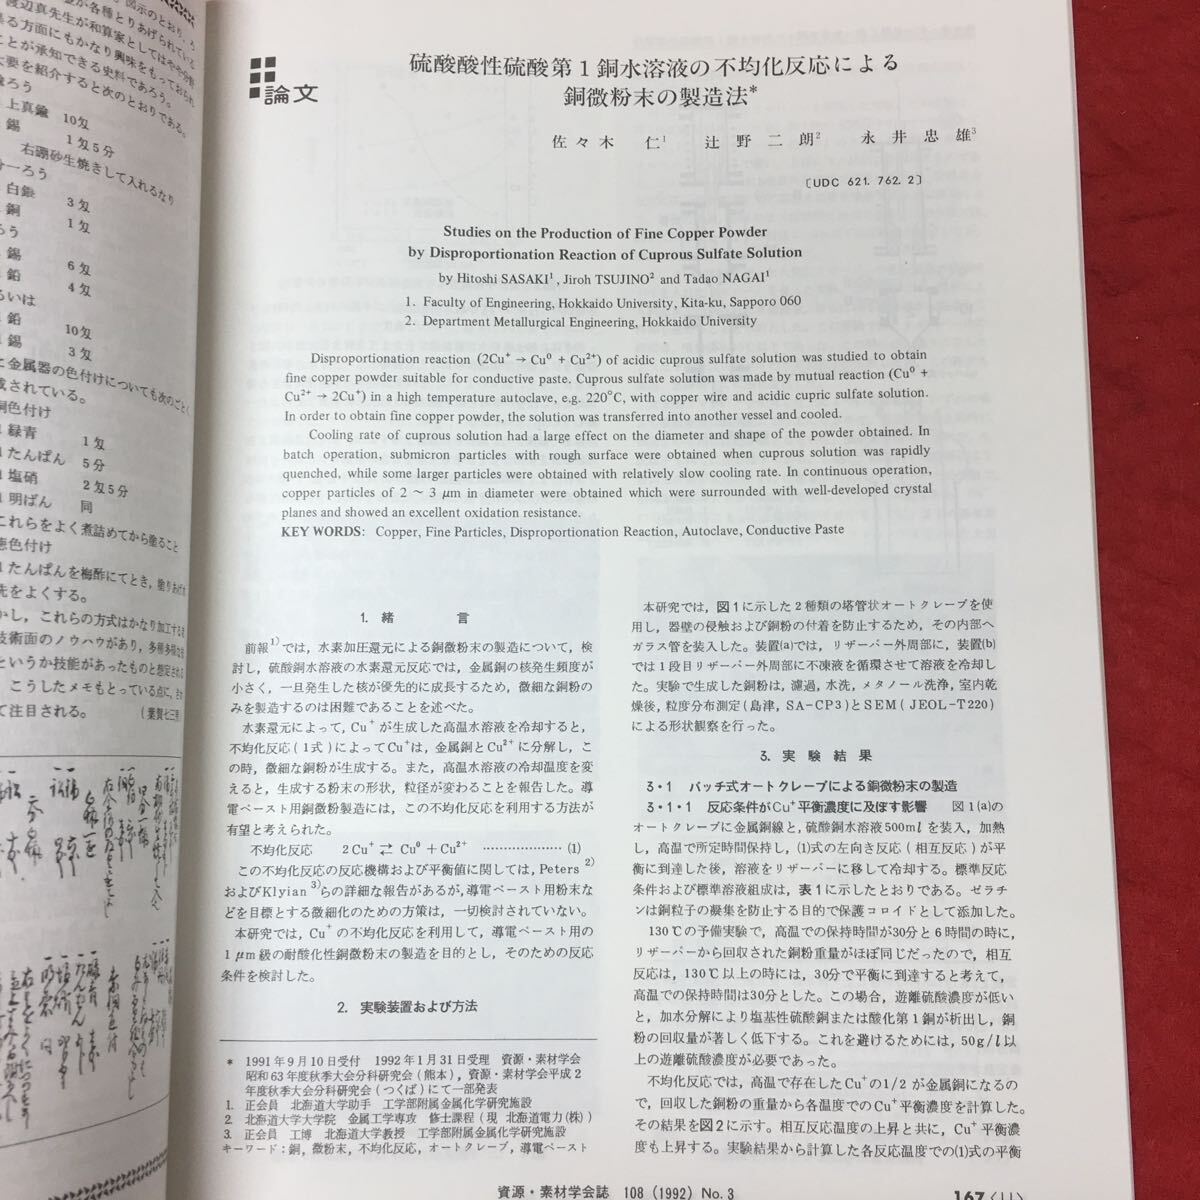 華麗 雑誌 発行 平成4年3月25日 VOL.108 1992年3月号 資源・素材学会誌 